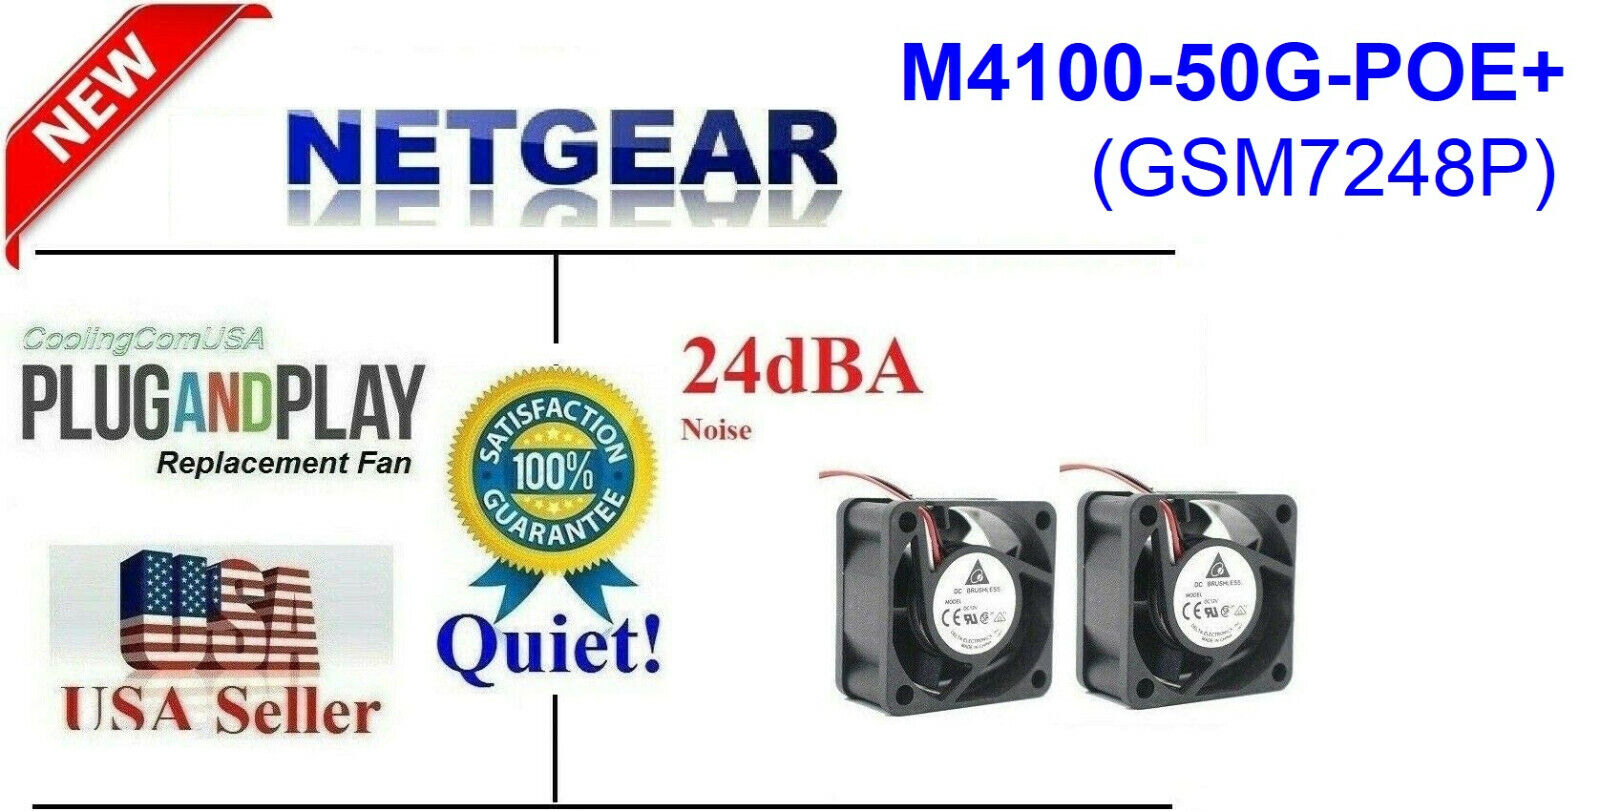 2x Quiet Version Replacement Fans for Netgear M4100-50G-POE+ (GSM7248P)